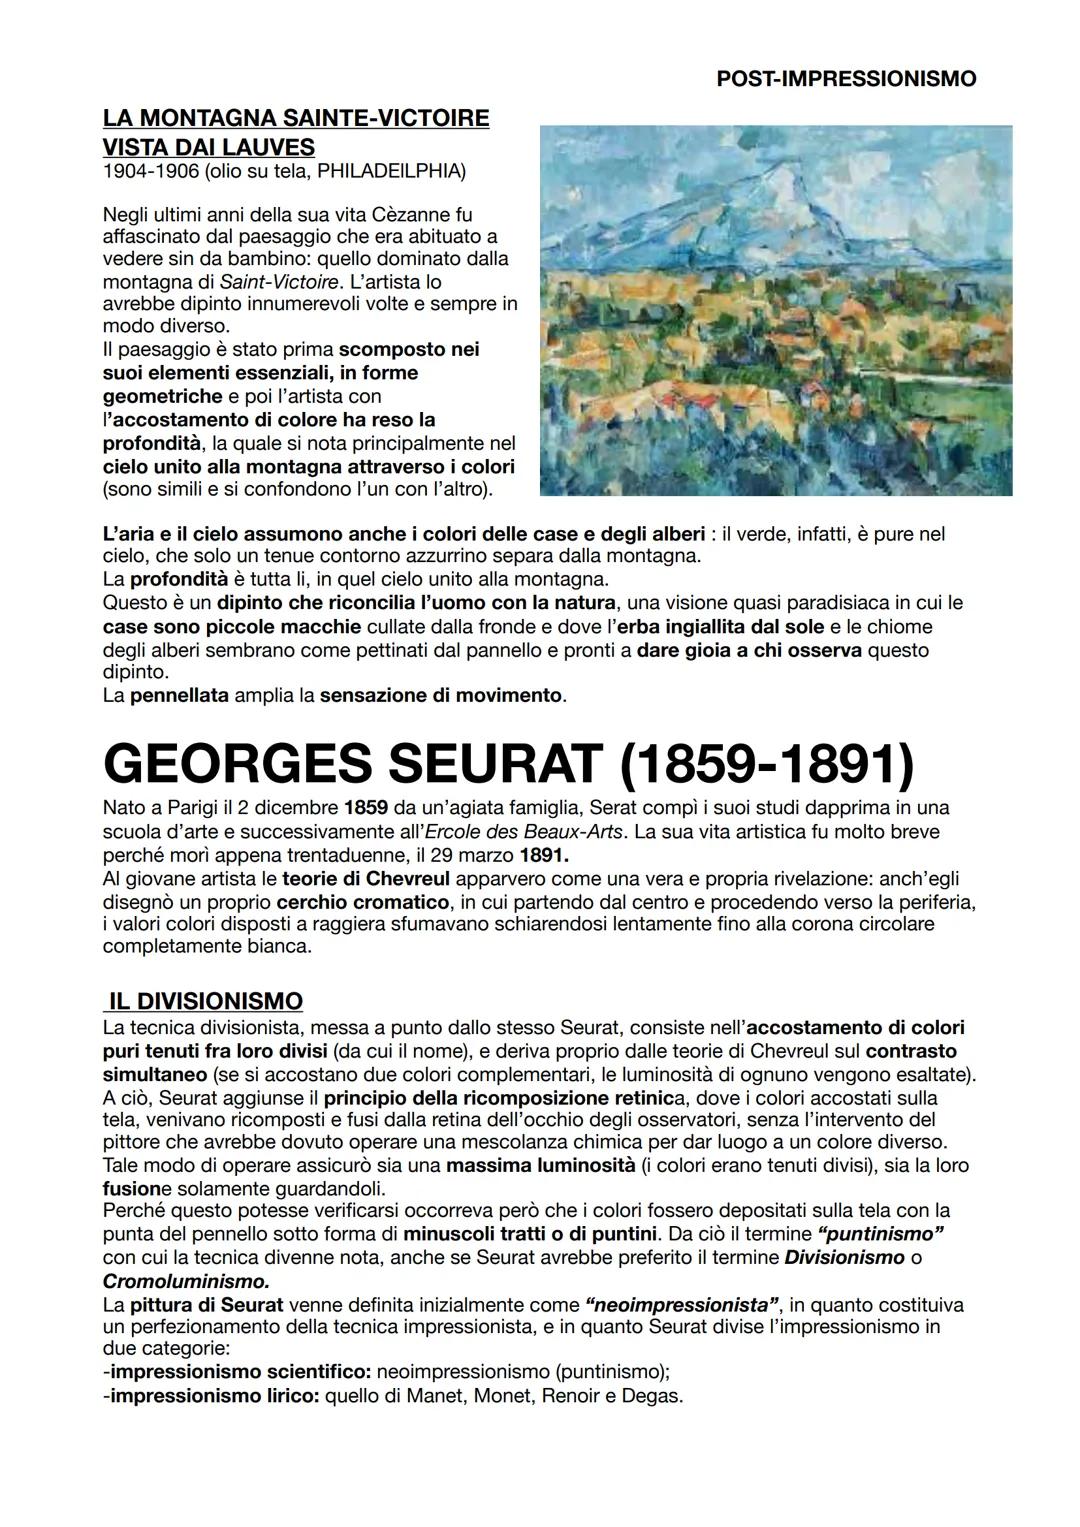 POST-IMPRESSIONISMO
Con il termine post-impressionismo intendiamo tutte quelle tendenze che si sono sviluppate in
Francia e che furono impor